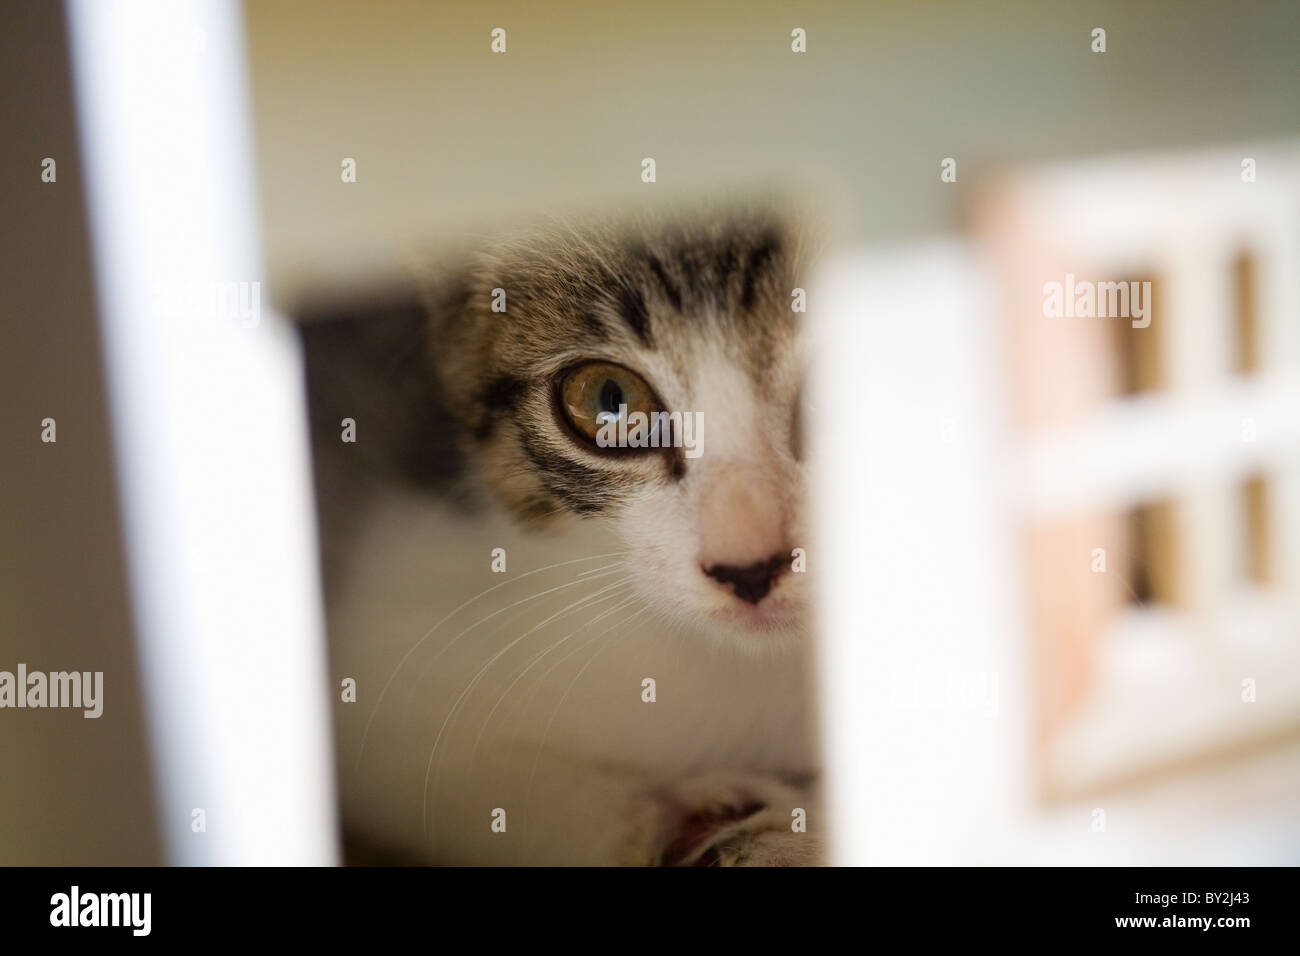 Un gatito que sobresale de la puerta de la casa de muñecas Foto de stock